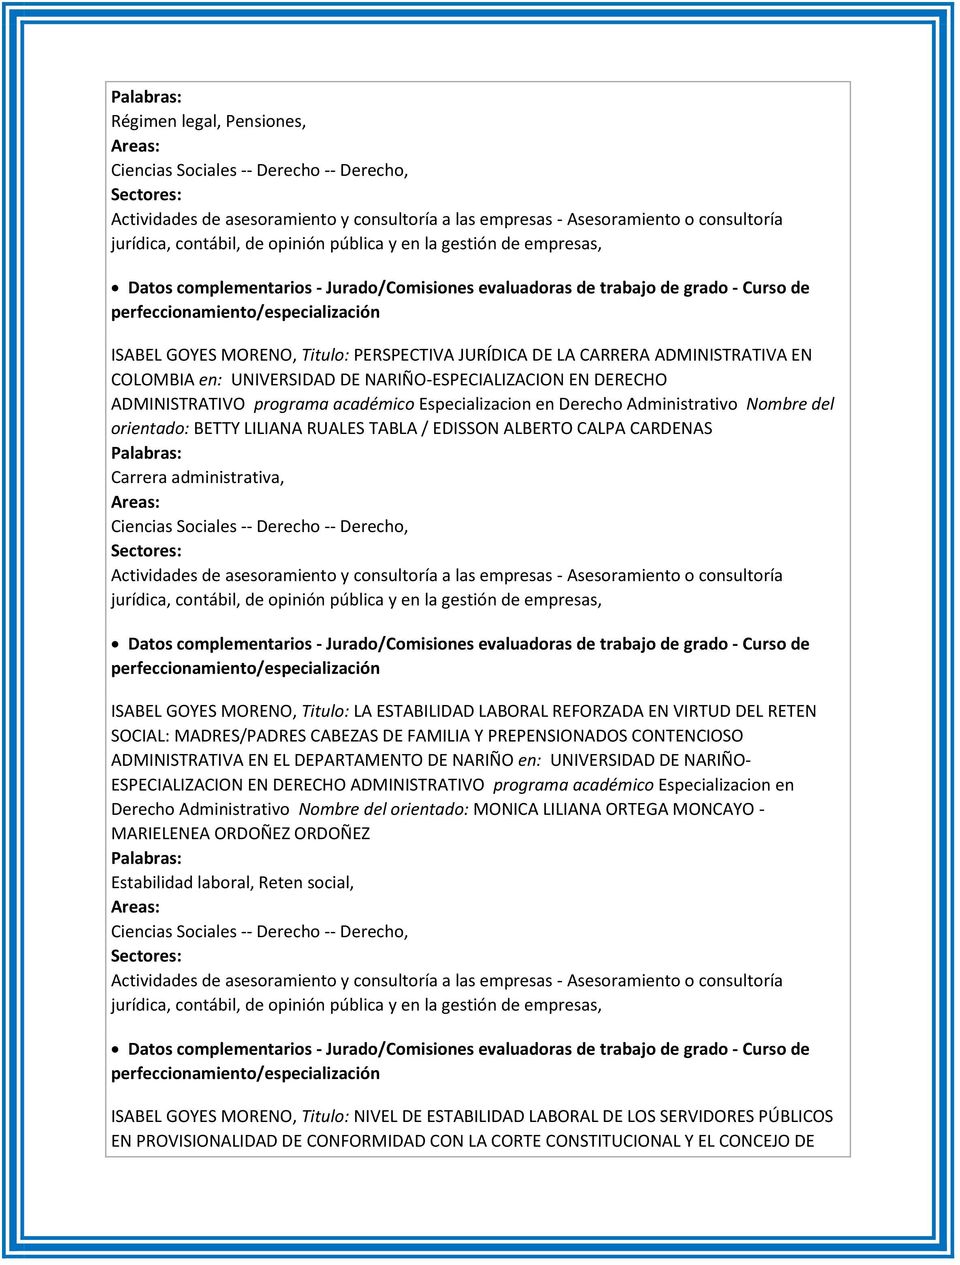 ADMINISTRATIVA EN COLOMBIA en: UNIVERSIDAD DE NARIÑO-ESPECIALIZACION EN DERECHO ADMINISTRATIVO programa académico Especializacion en Derecho Administrativo Nombre del orientado: BETTY LILIANA RUALES